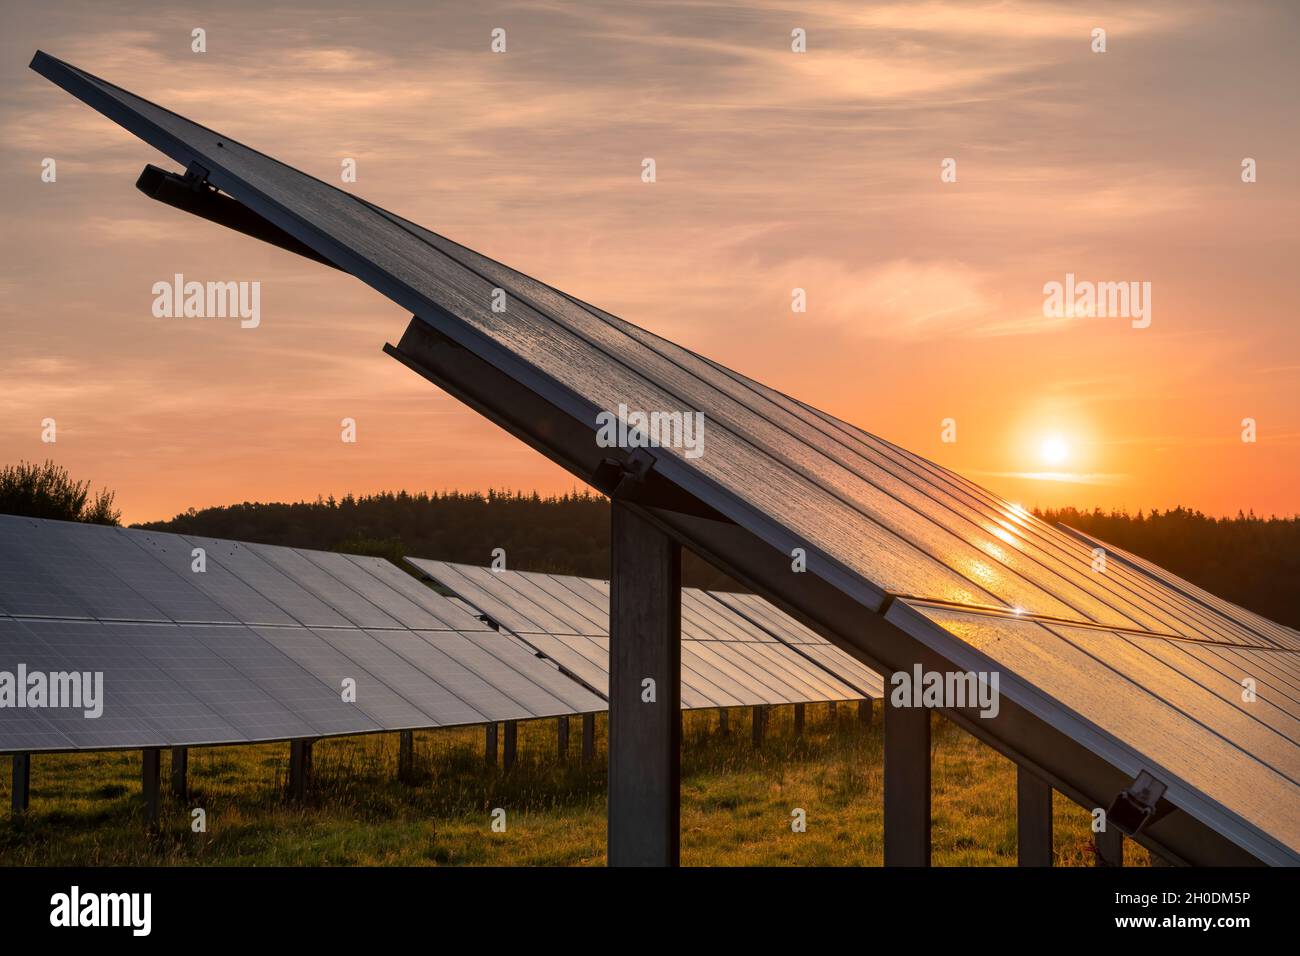 Le soleil se lève sur un ensemble de panneaux photovoltaïques dans un champ de Devon à l'aube à la fin de l'été. Banque D'Images